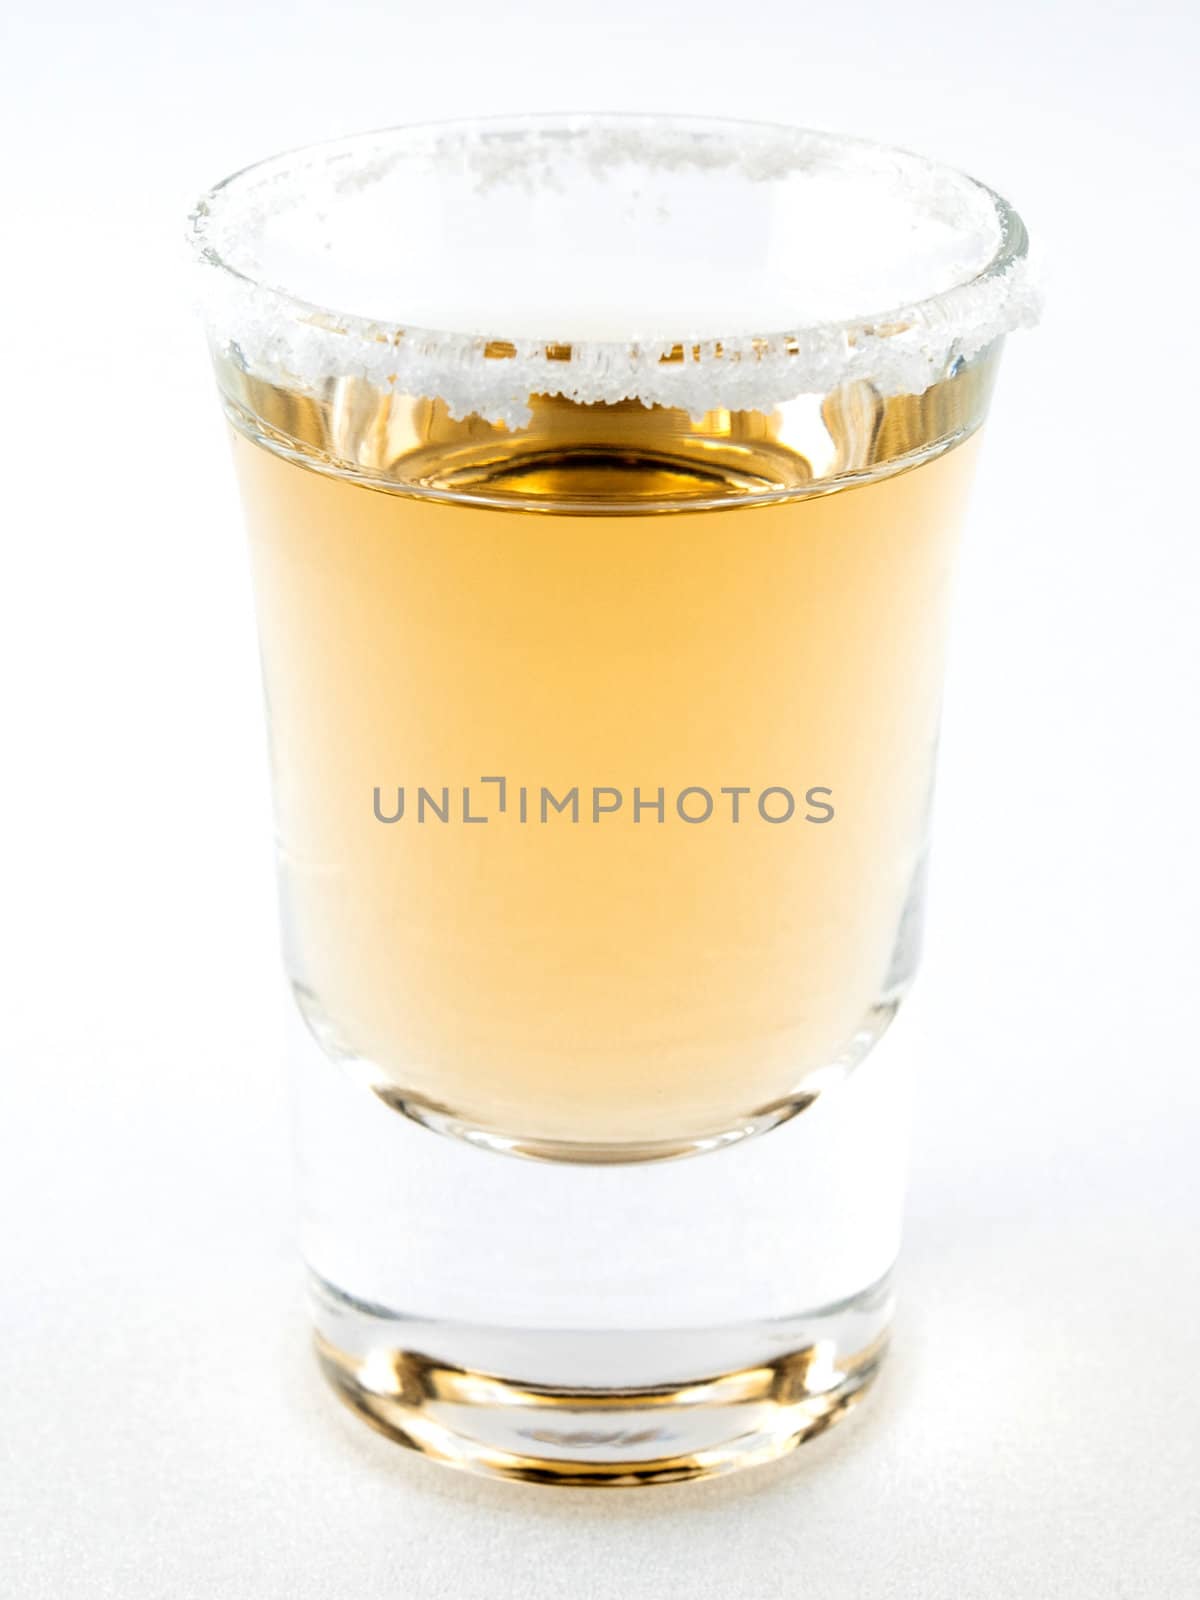 A shot of teqila in a shot glass with a salt rim